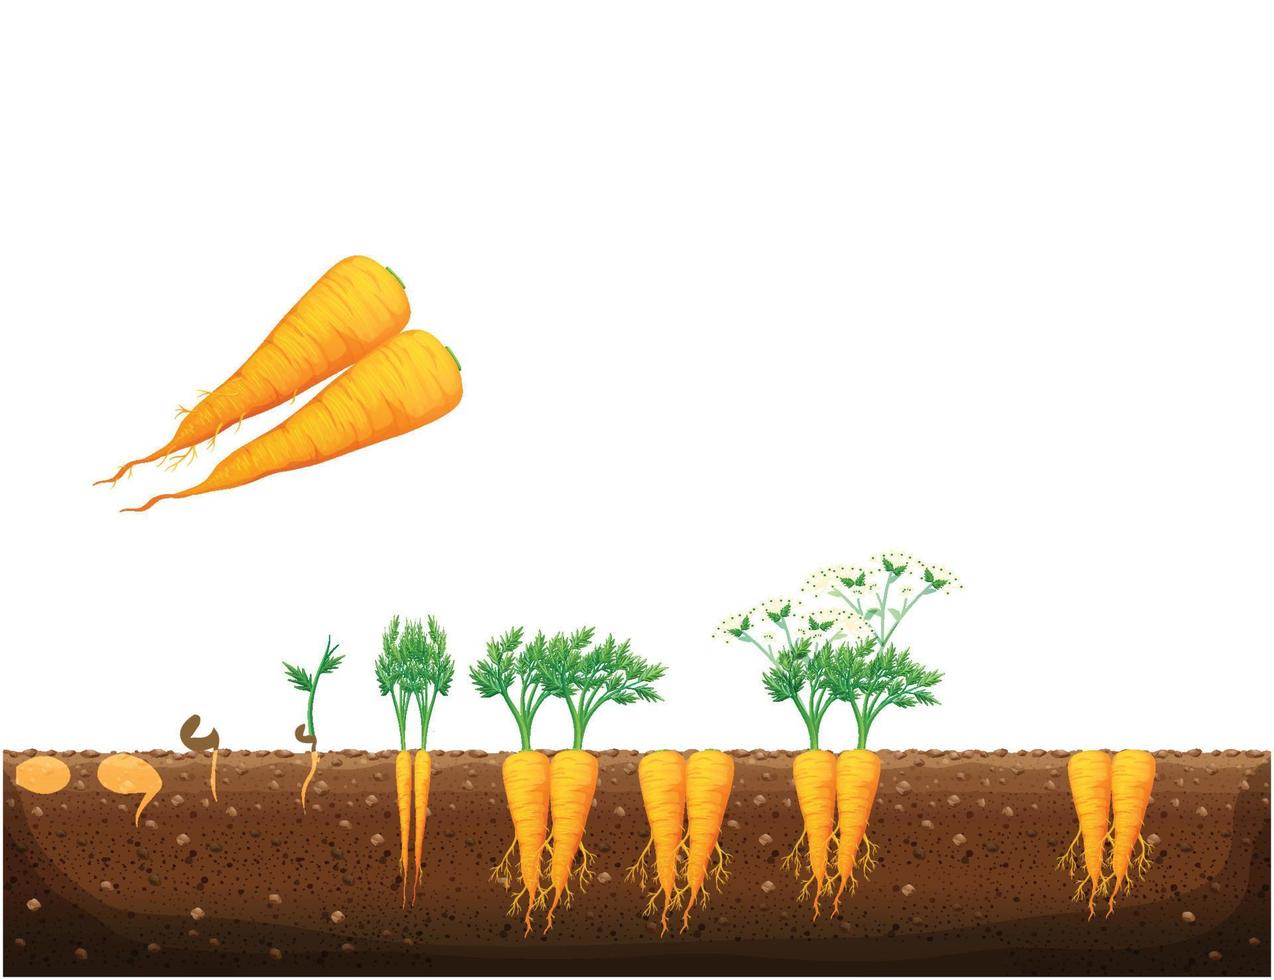 wortel fabriek groei stadia, de groeit werkwijze van wortel van zaden, spruit naar volwassen penwortel, oranje wortels kraan wortel groente plantkunde leven fiets. oogst teelt en ontwikkeling vector